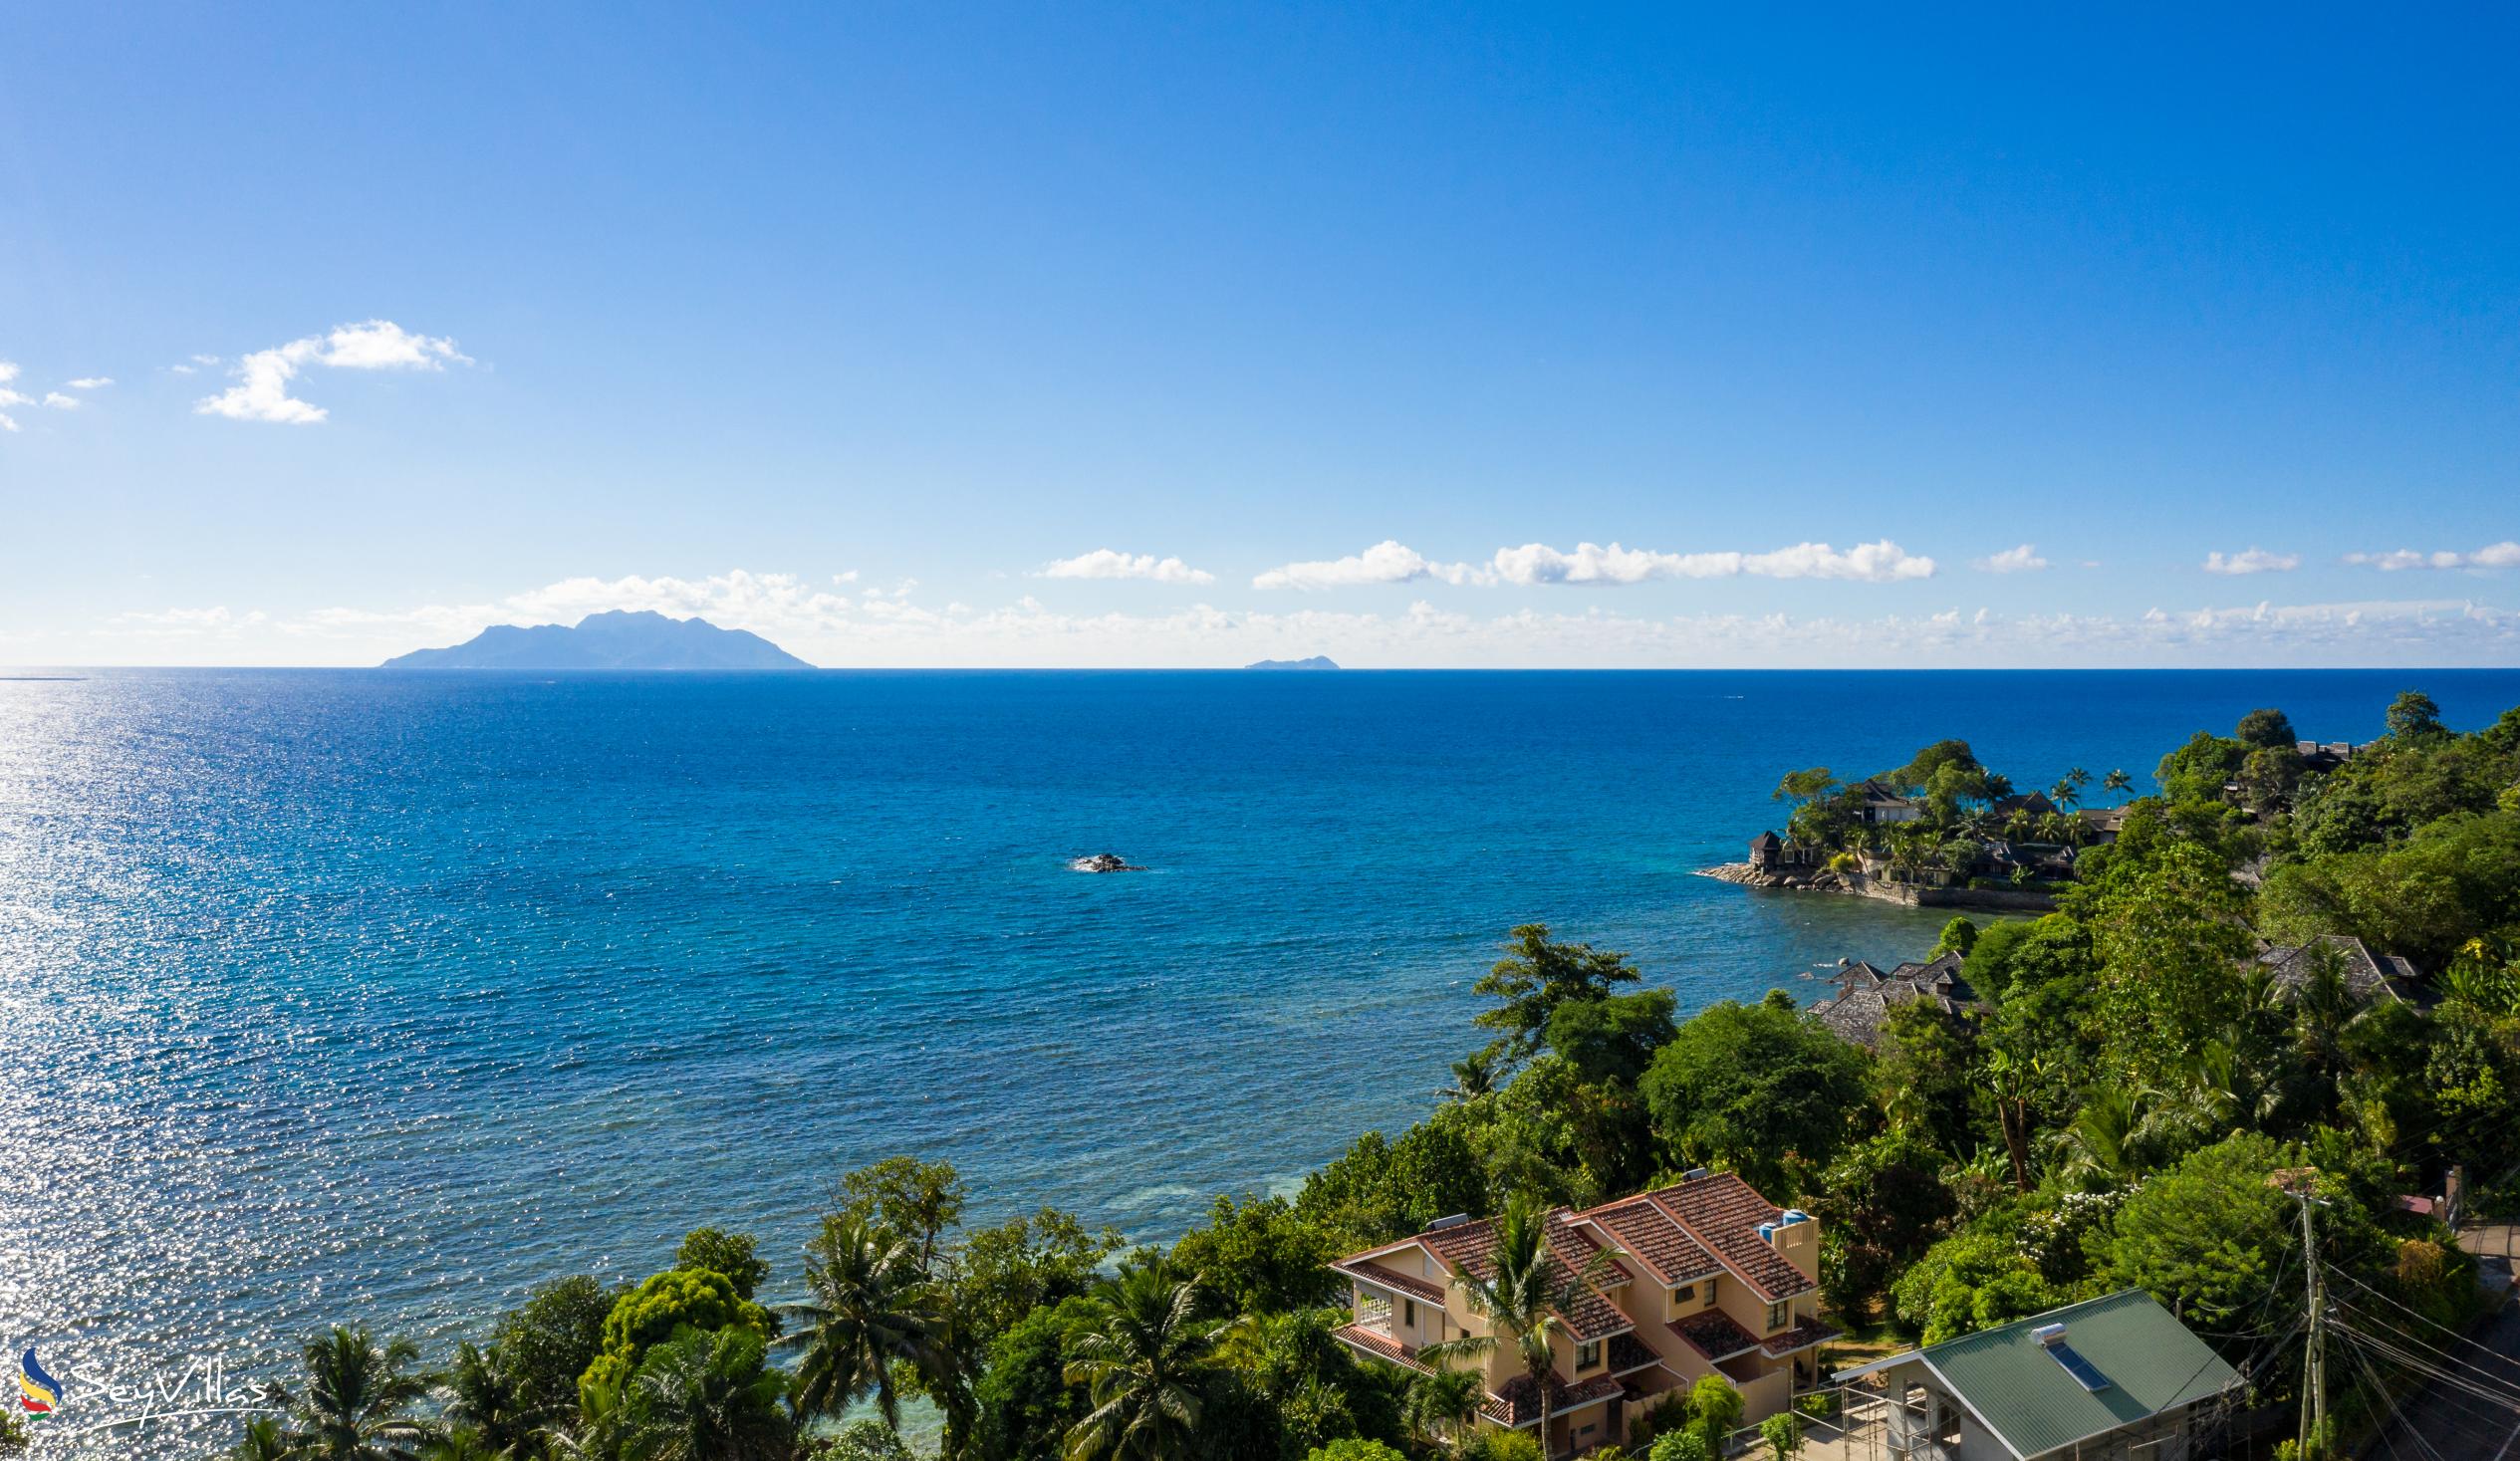 Foto 55: Villa Panoramic Seaview - Posizione - Mahé (Seychelles)